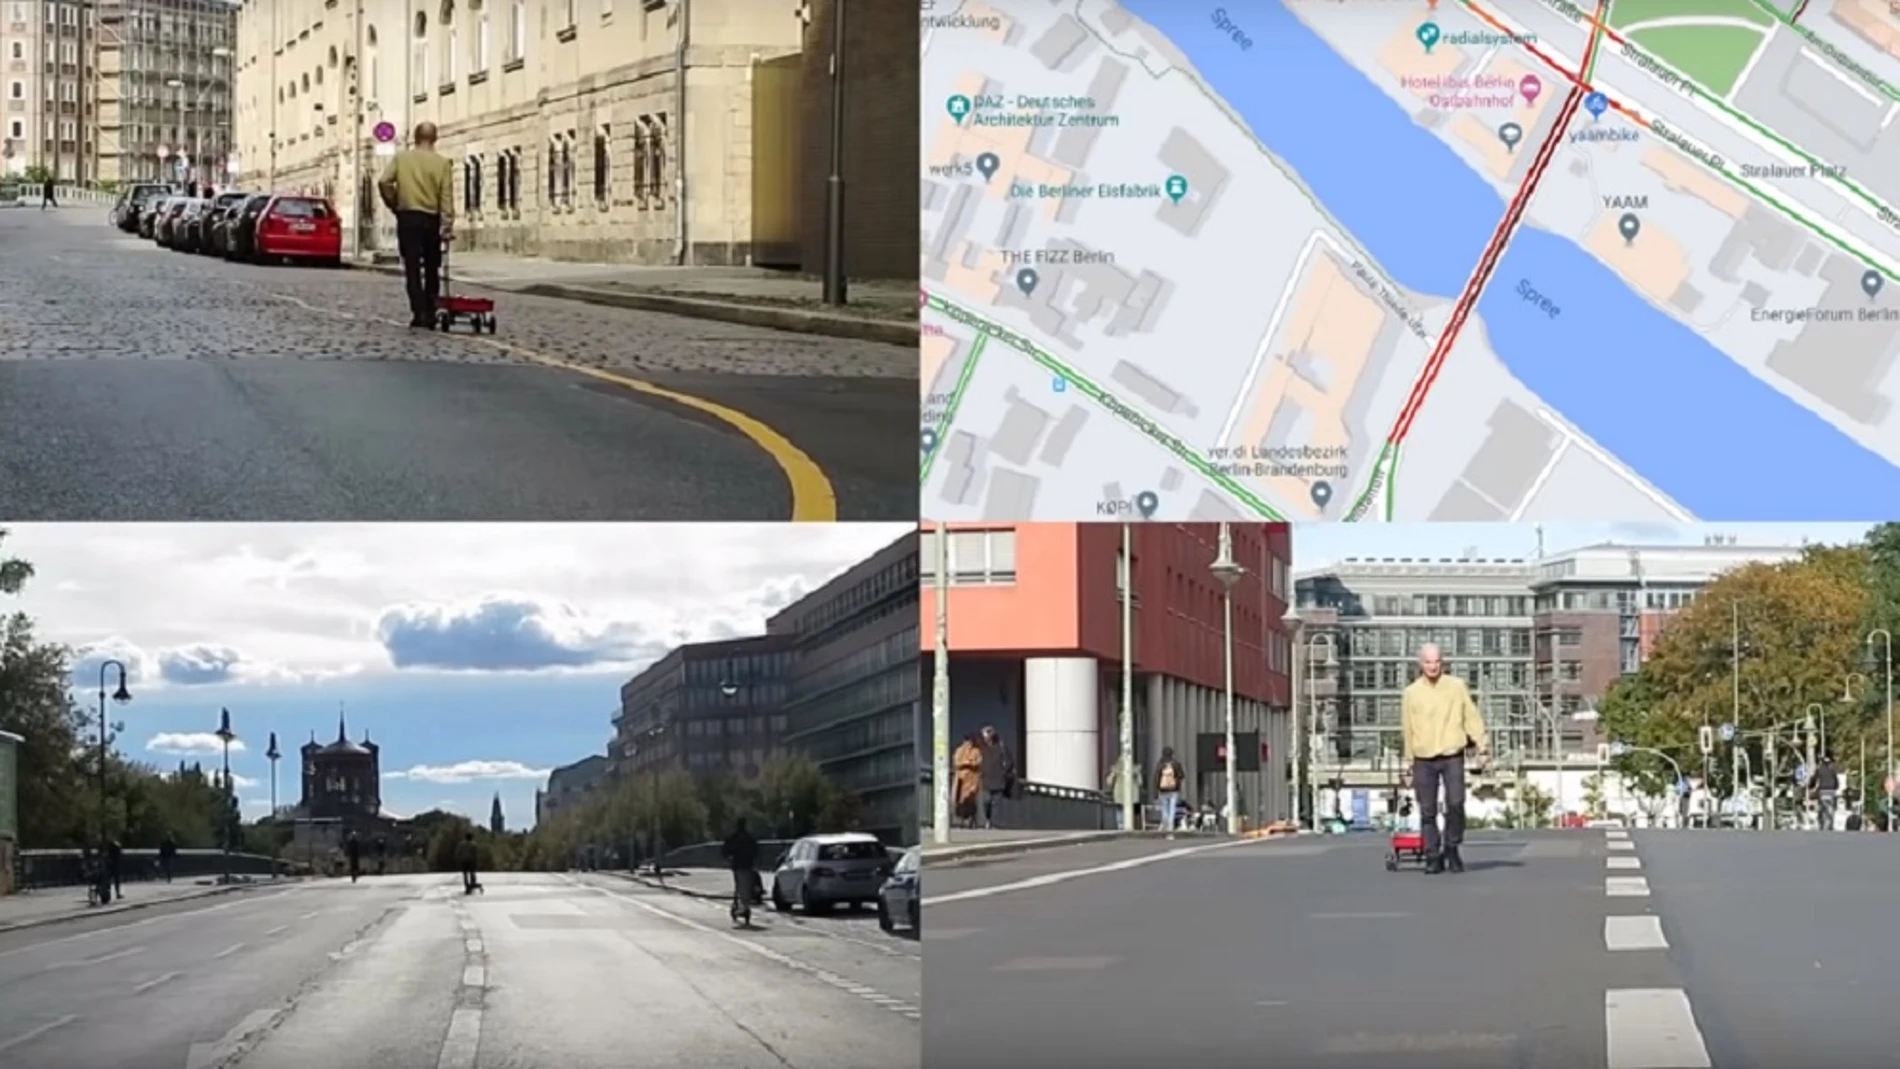 Un artista alemán 'hackea' Google Maps con una carretilla llena de teléfonos móviles 